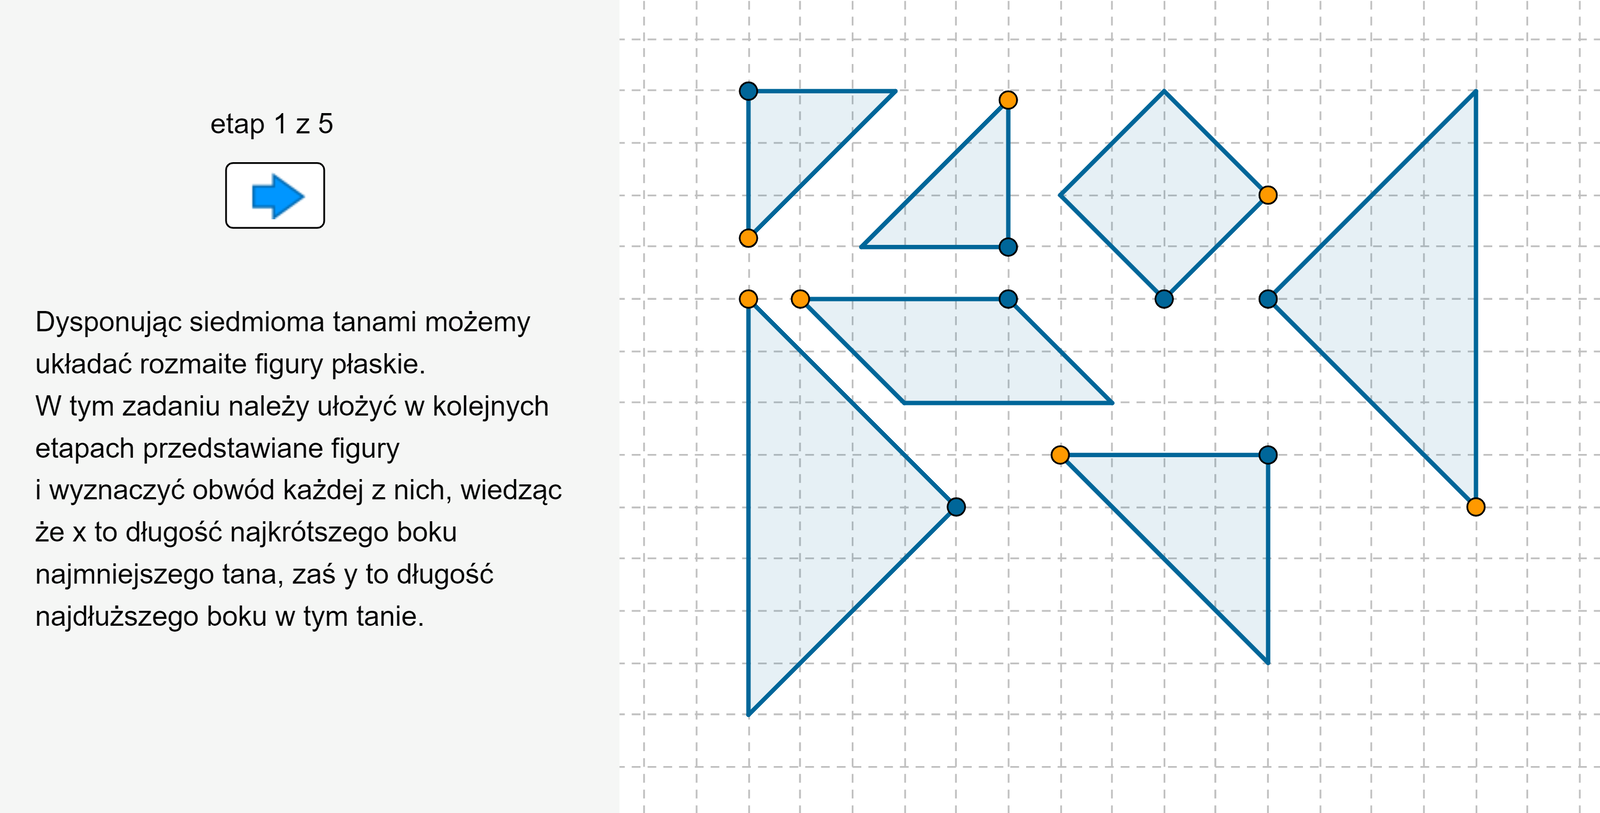 Aplet pokazuje siedem figur (tanów): 2 duże trójkąty, 1 średni trójkąt, 2 małe trójkąty, kwadrat i równoległobok, z których należy ułożyć dany wielokąt i zapisać wyrażenie oznaczające obwód danego wielokąta.